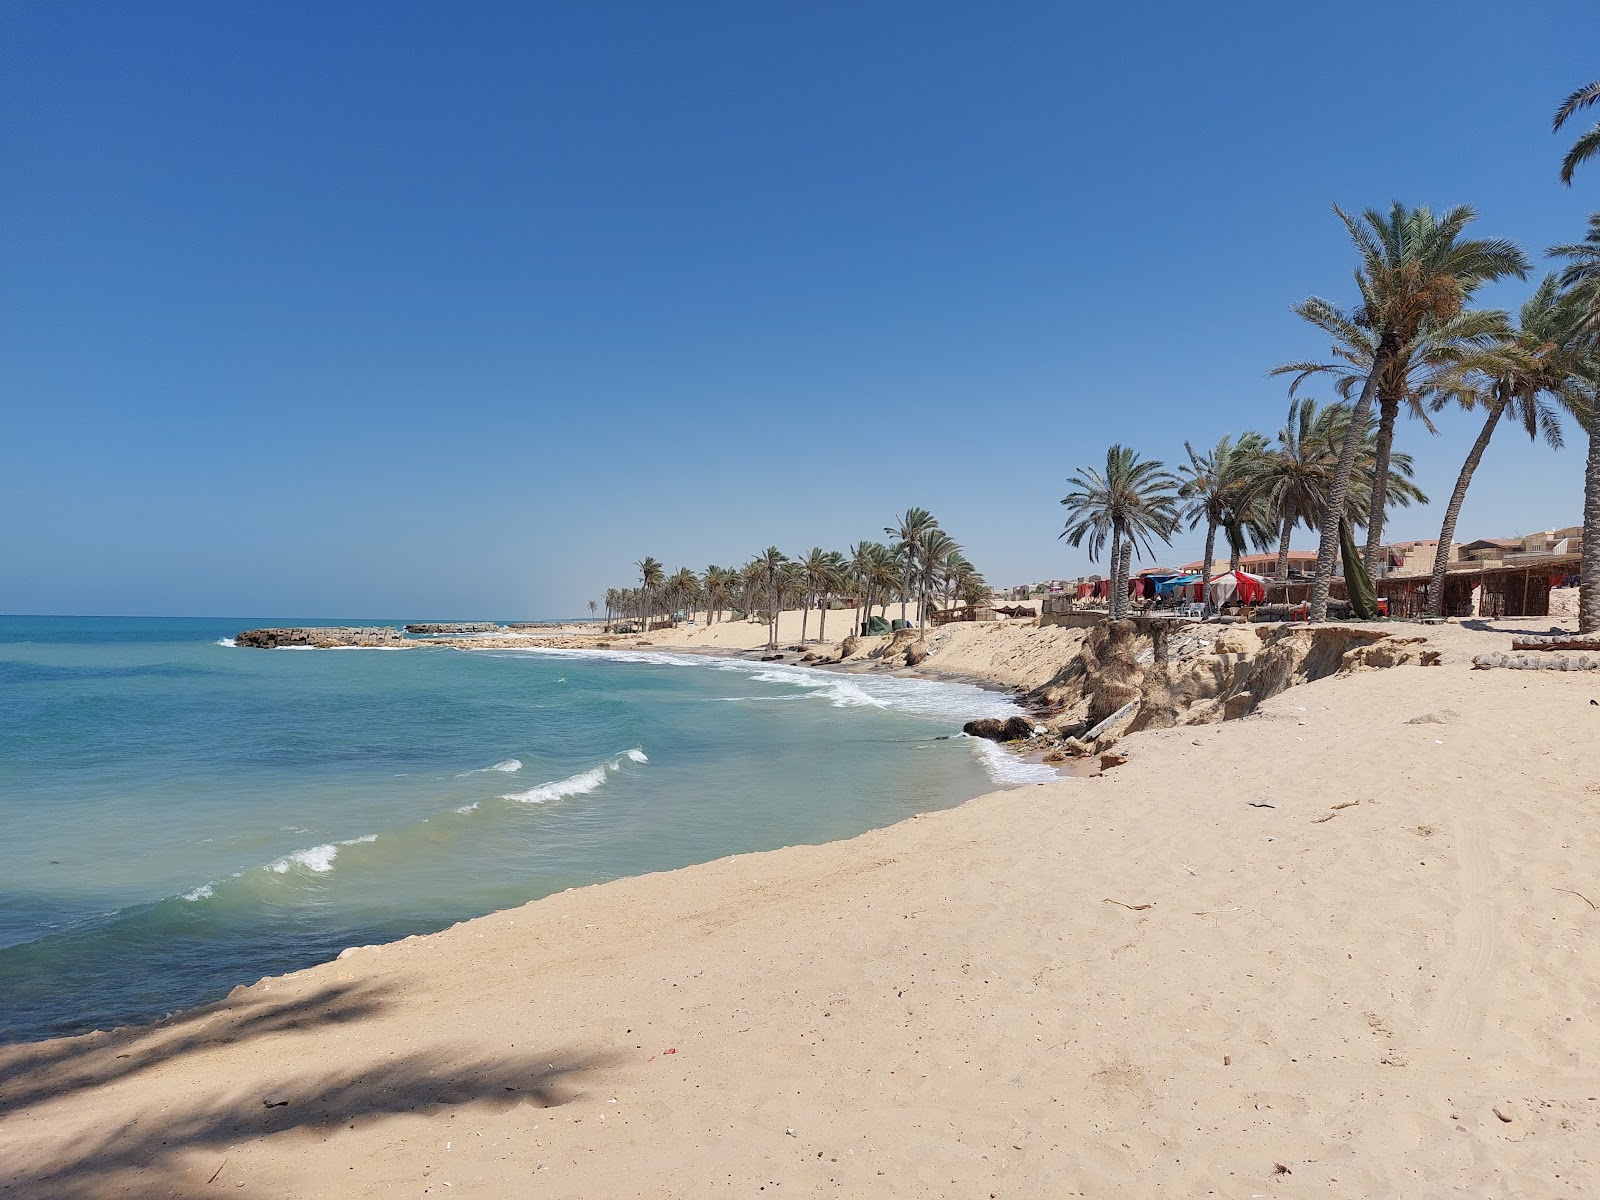 Fotografie cu El Resa Beach - locul popular printre cunoscătorii de relaxare